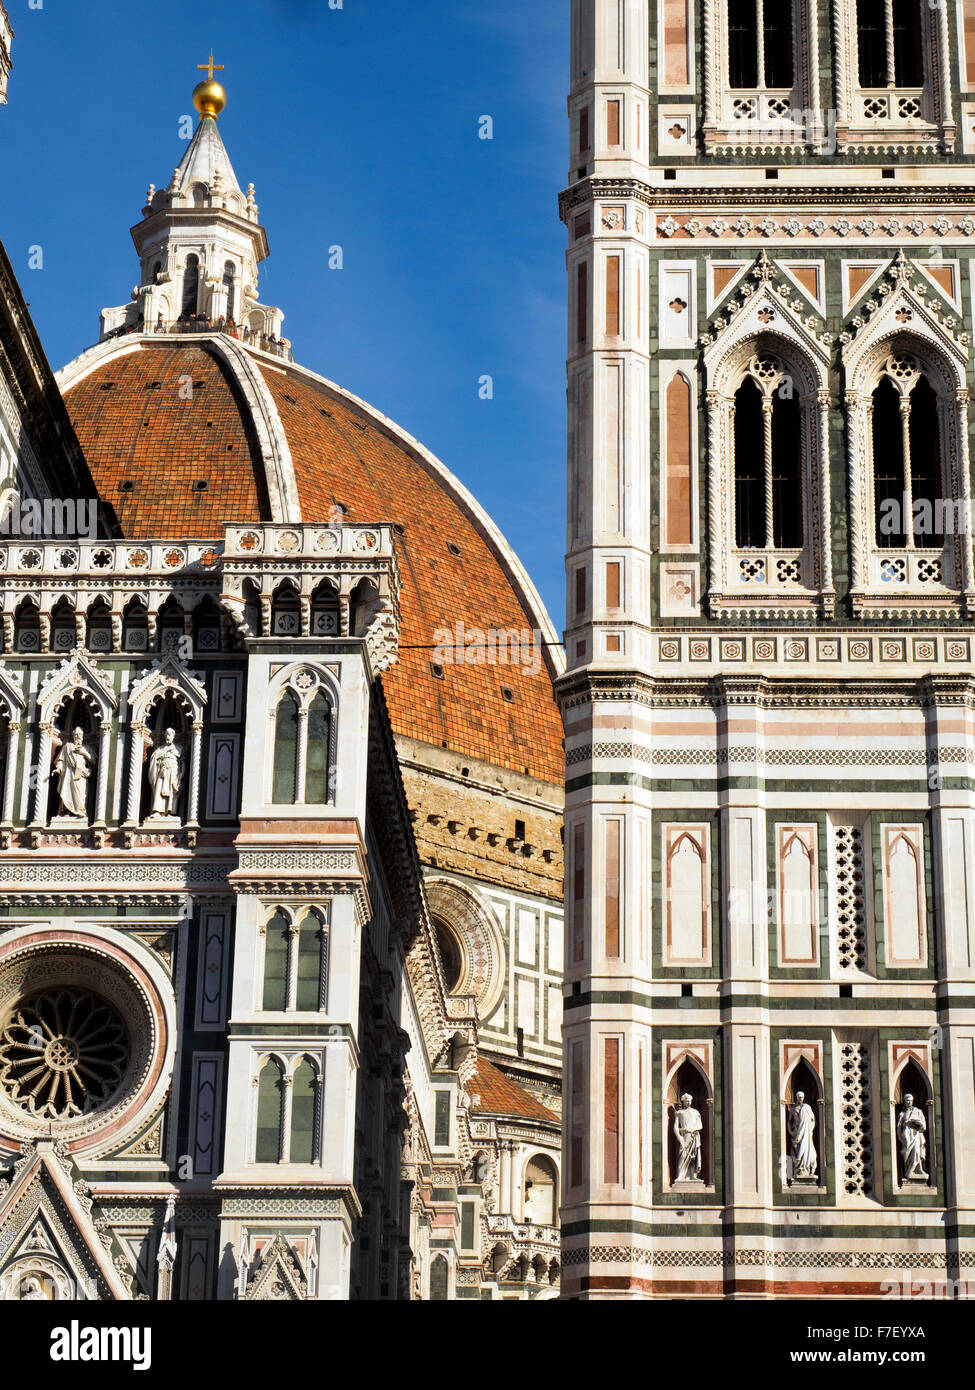 Giotto's dome of the Cattedrale di Santa Maria del Fiore  - Florence, Italy Stock Photo